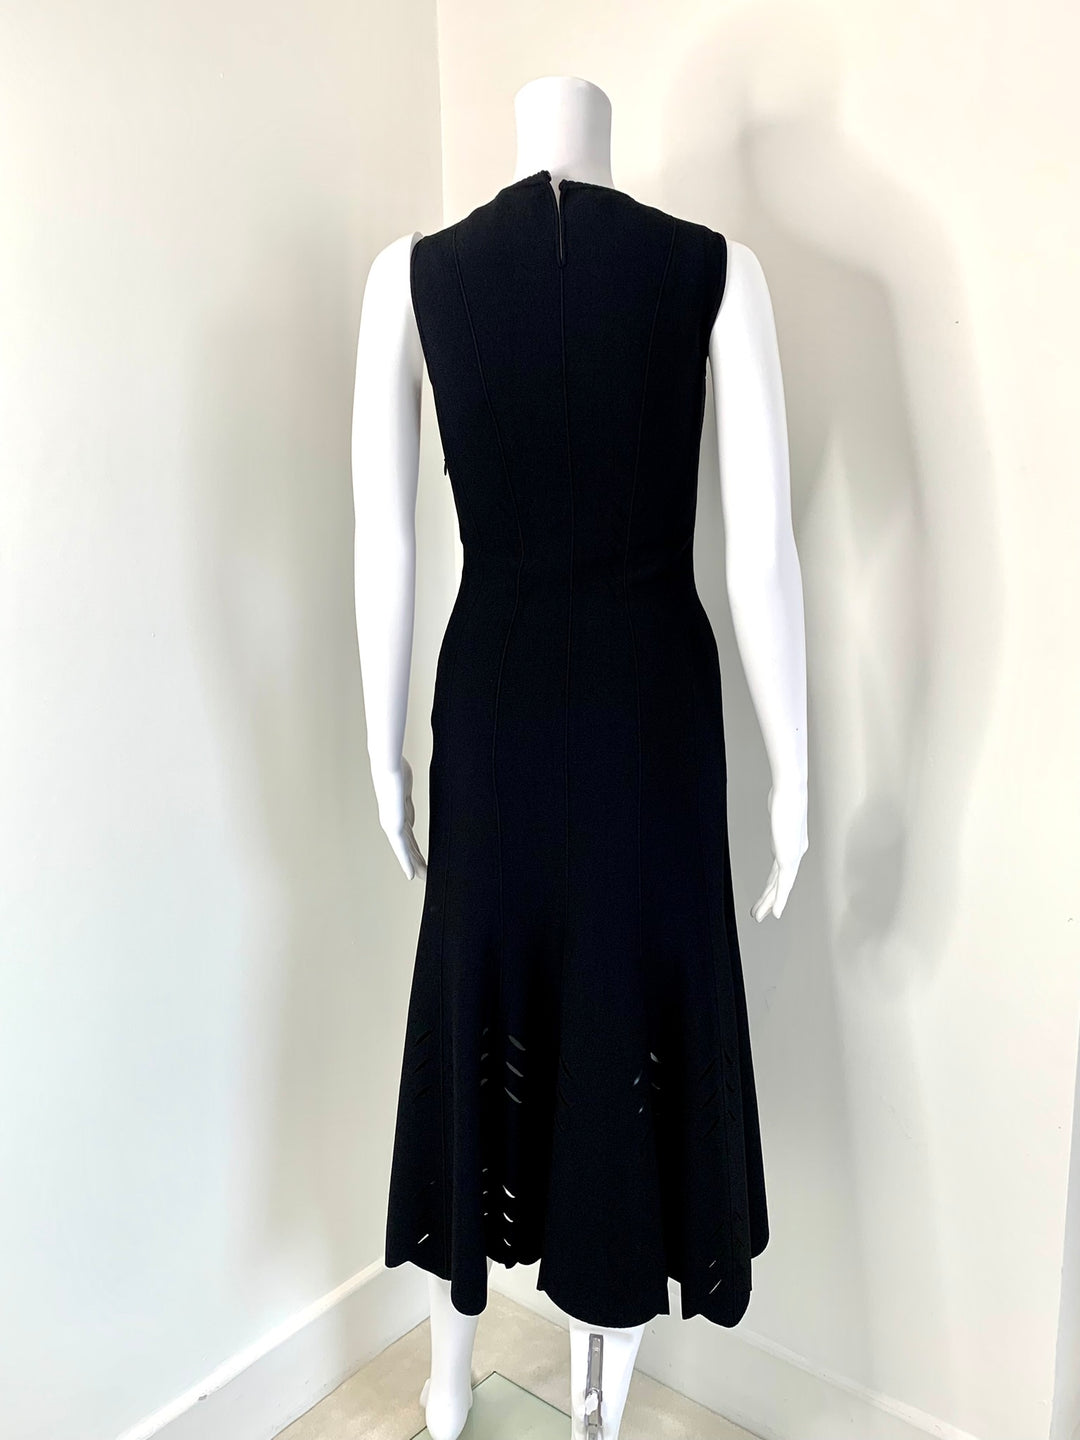 Alexander McQueen, Dress, 2018, Size UK Small